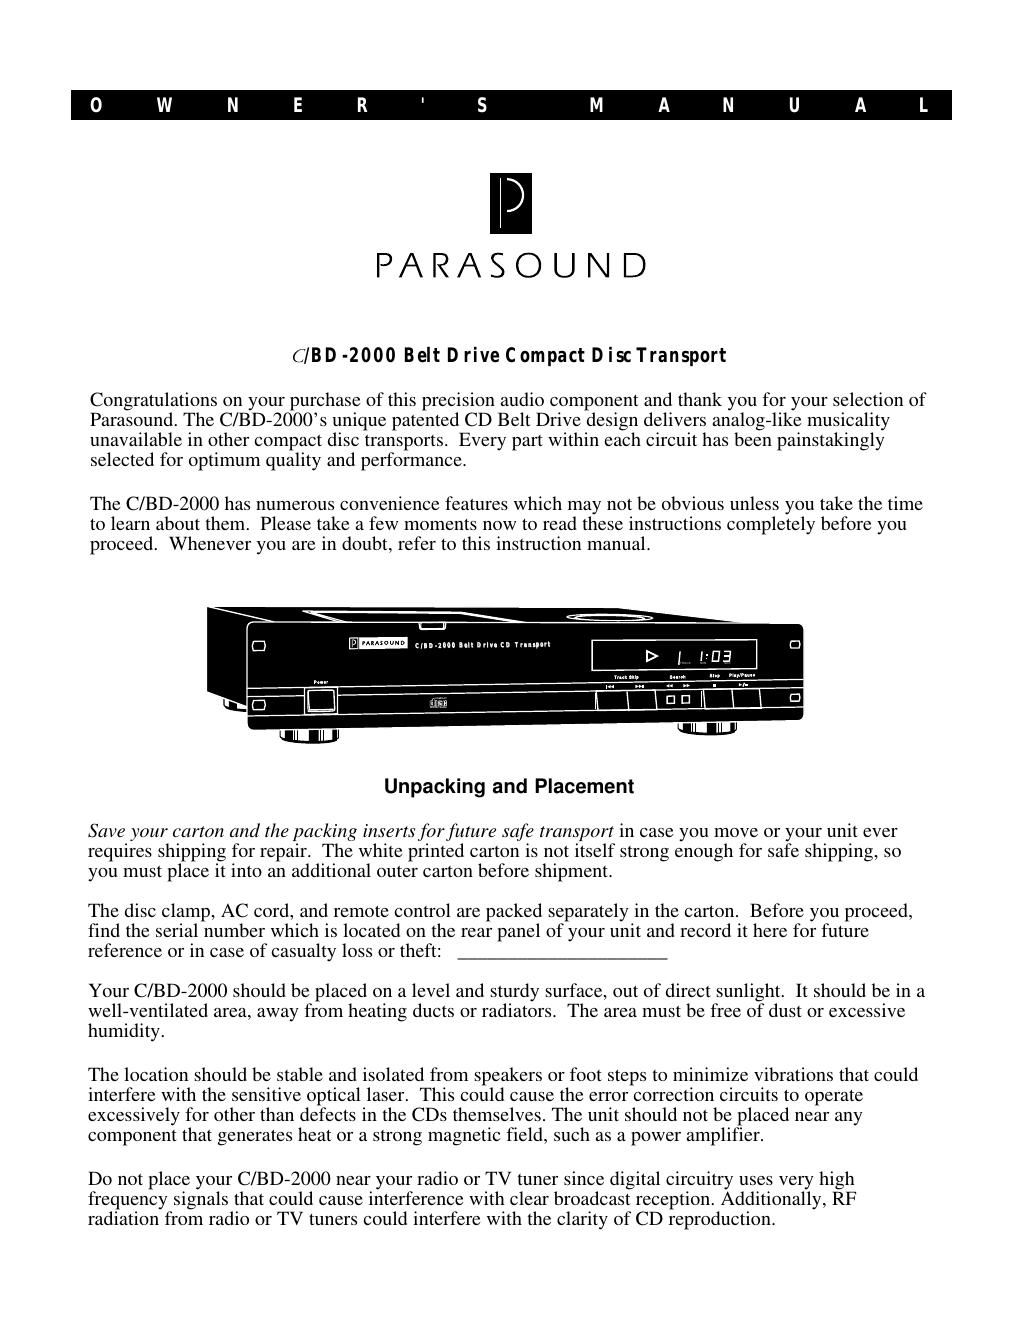 parasound cbd 2000 owners manual